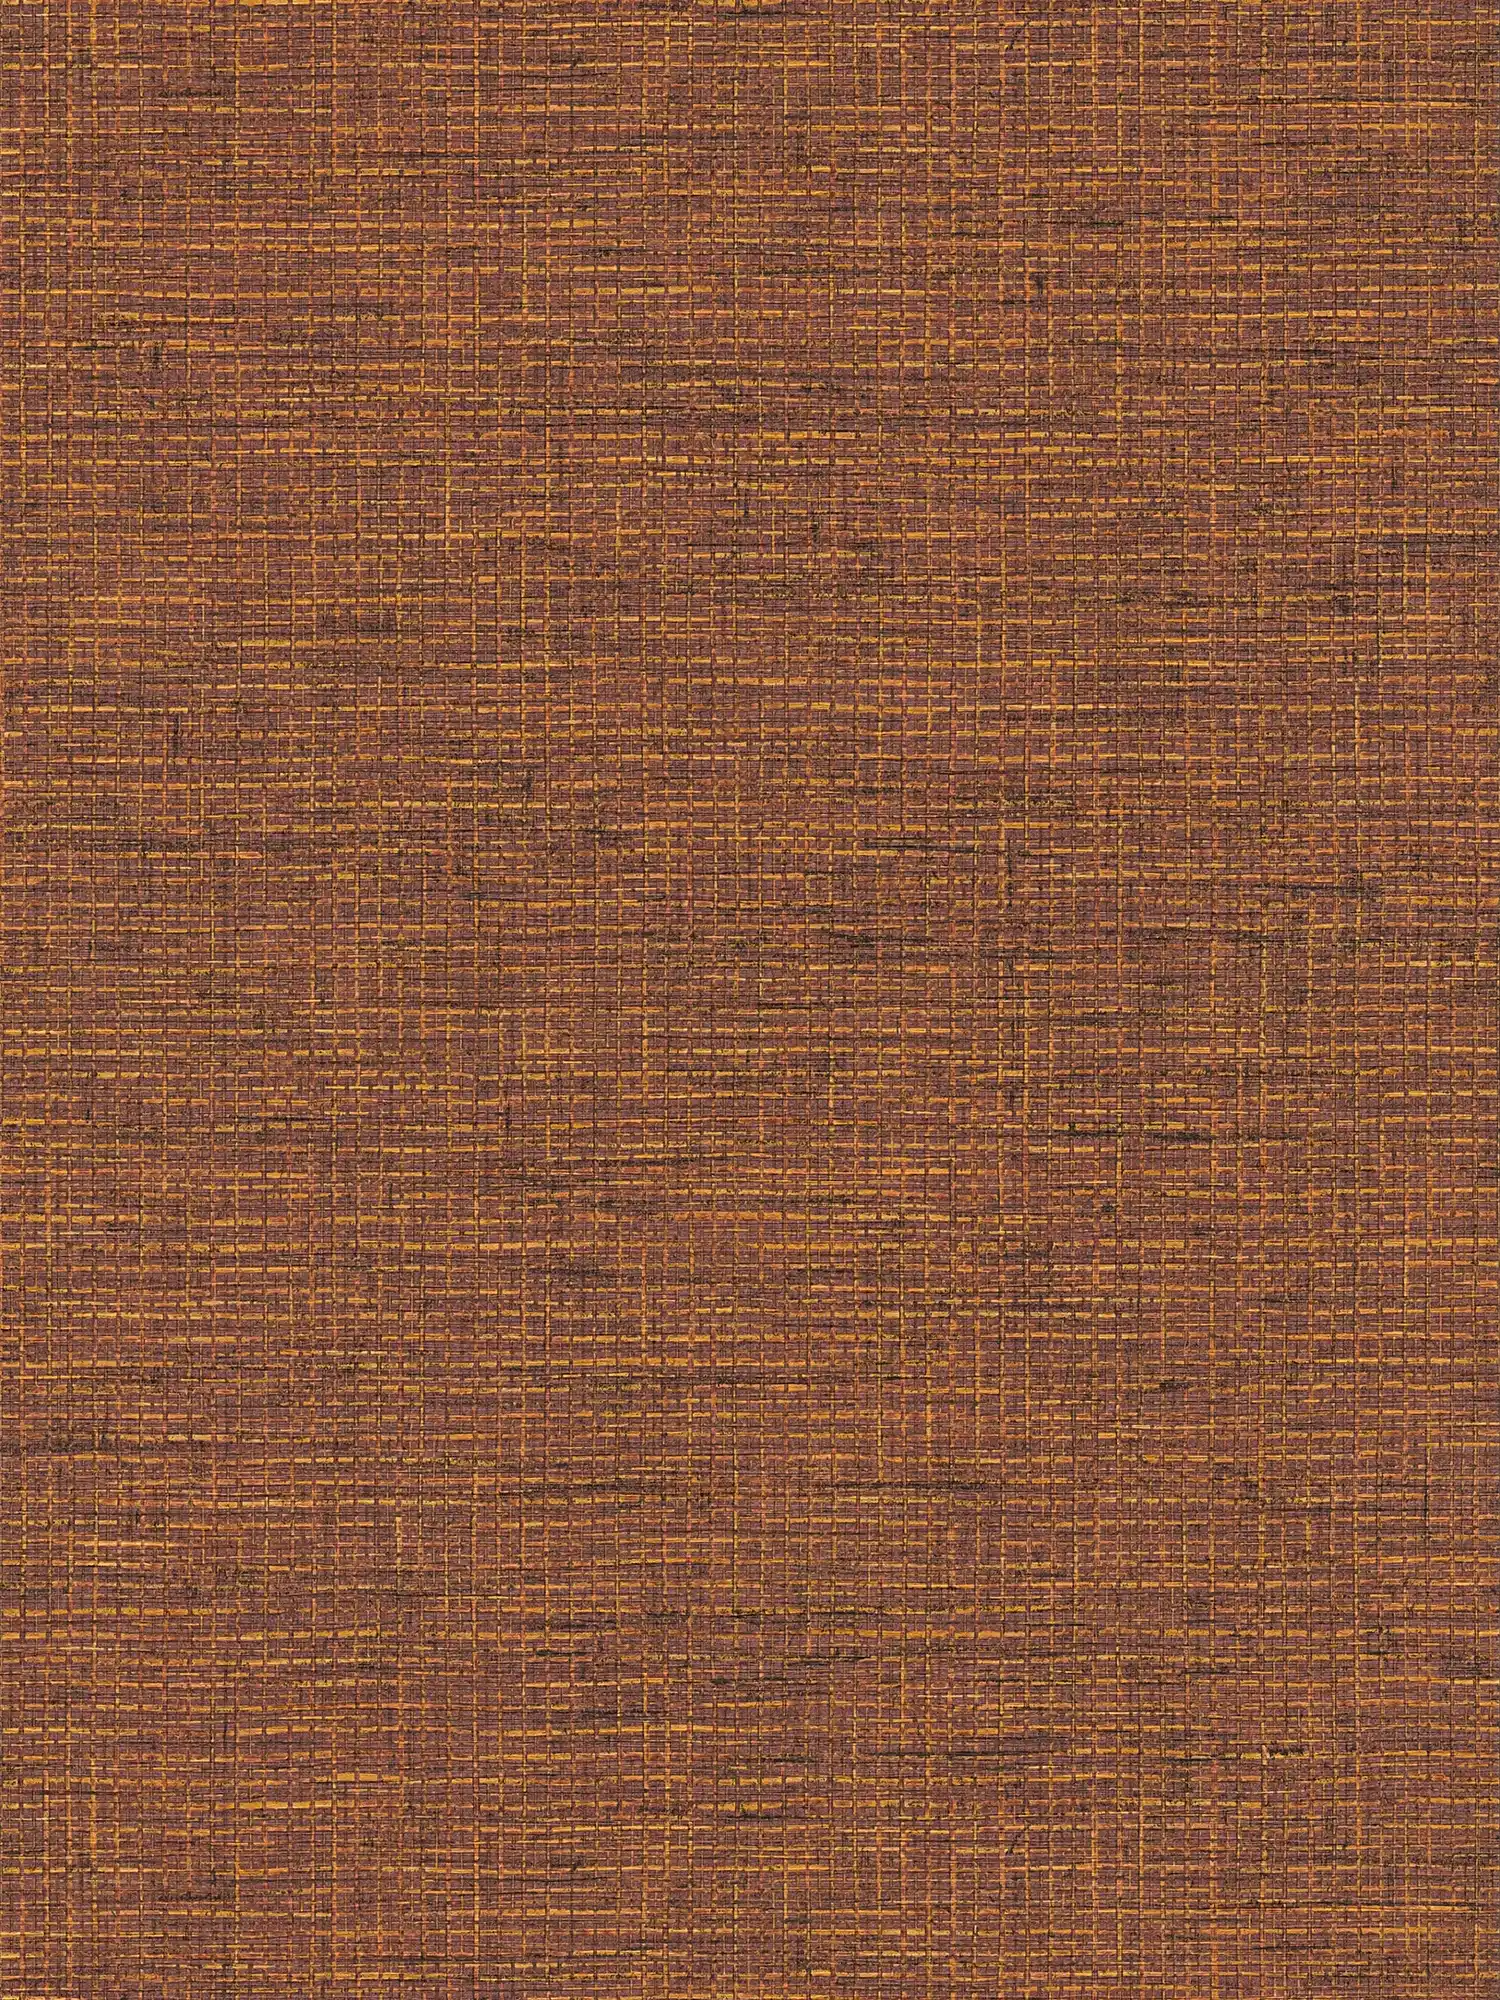 Papier peint ethnique orange-marron avec aspect tissé raphia
